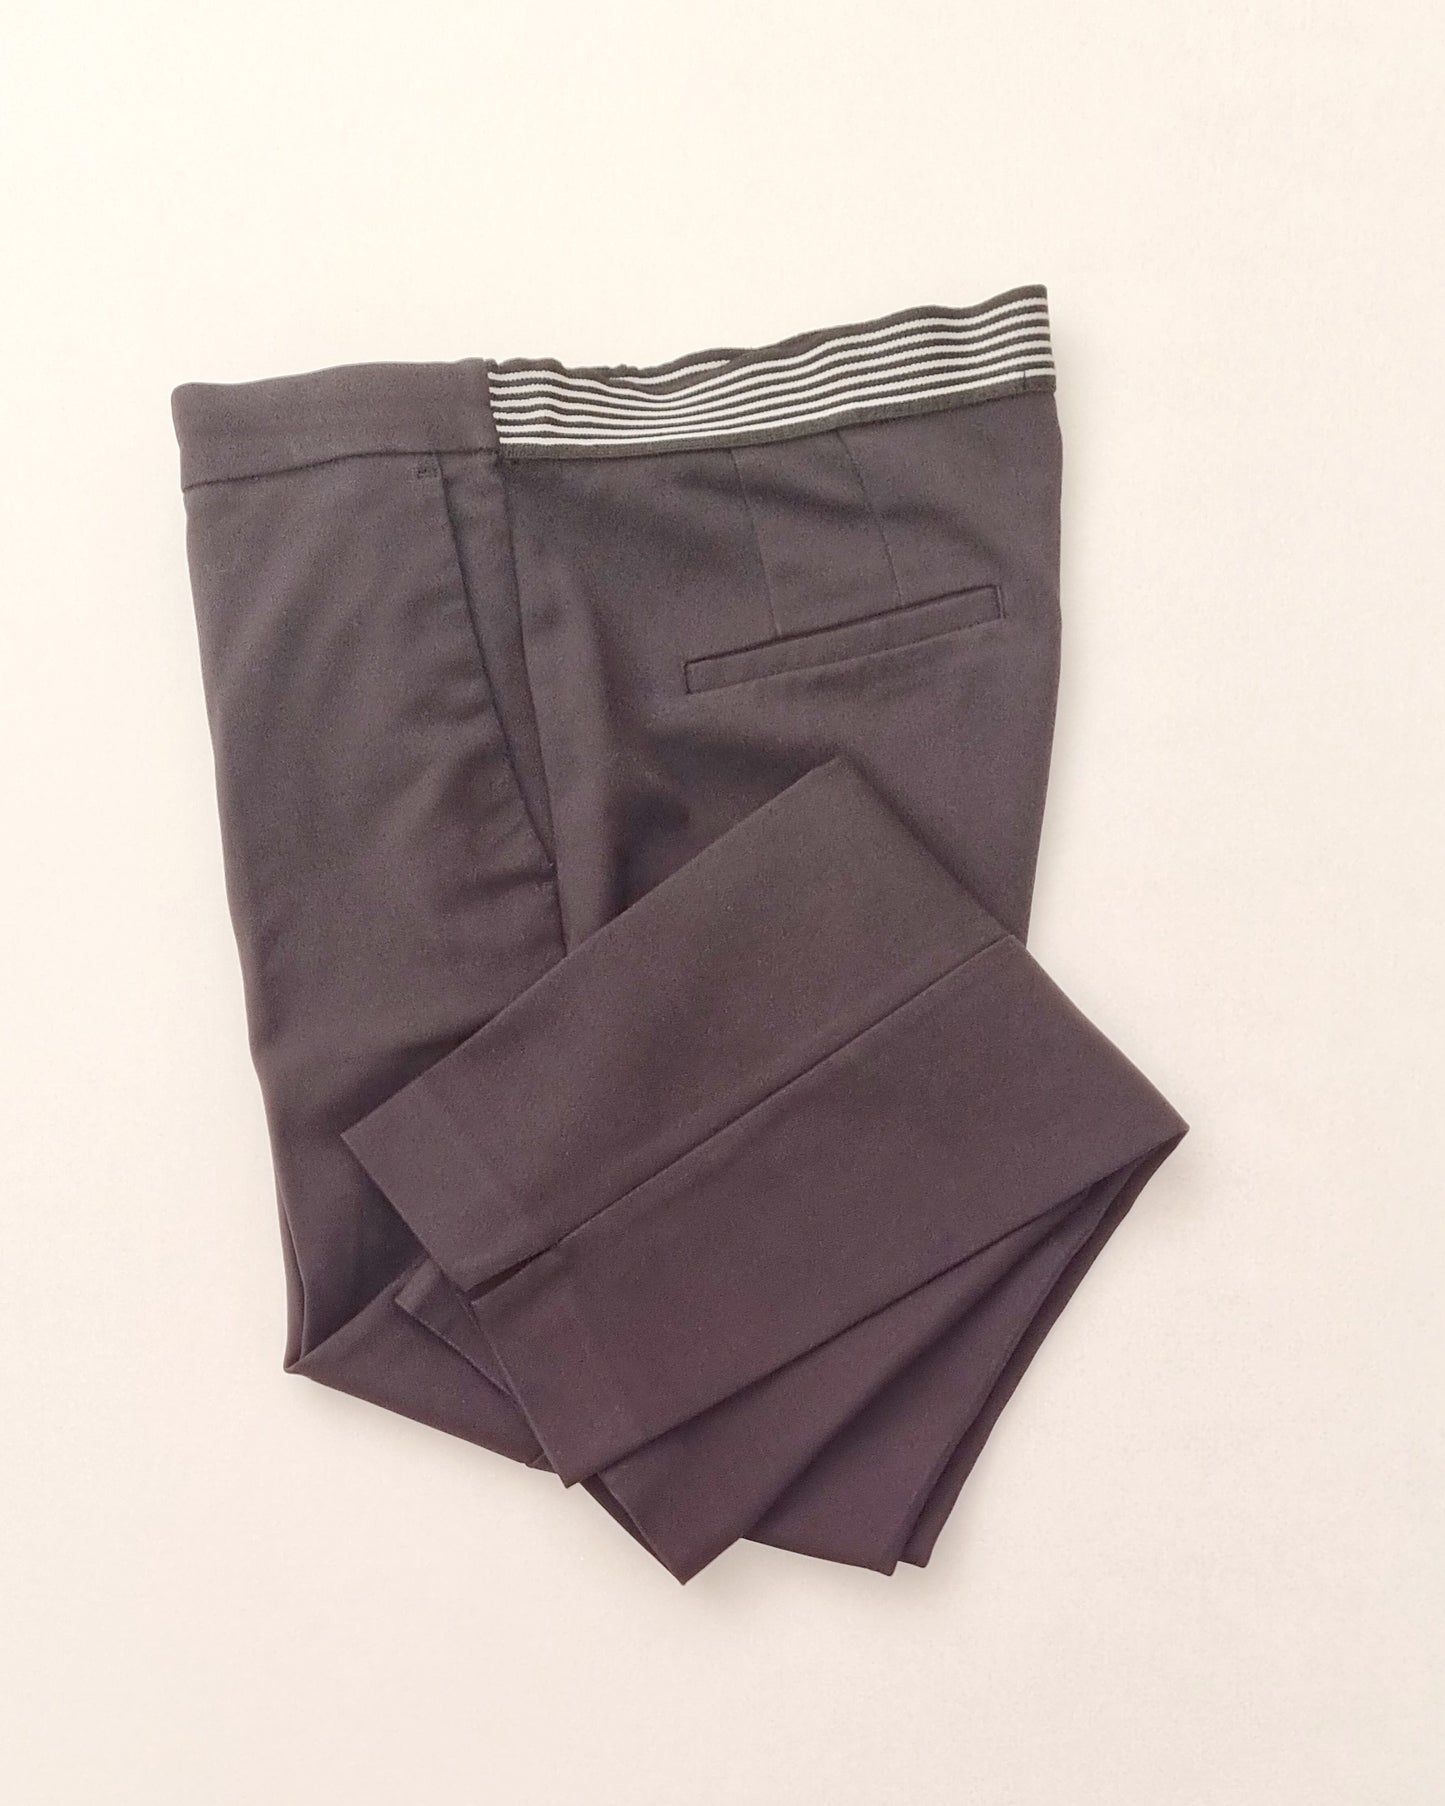 Zara - Black elastic waistband dress pants